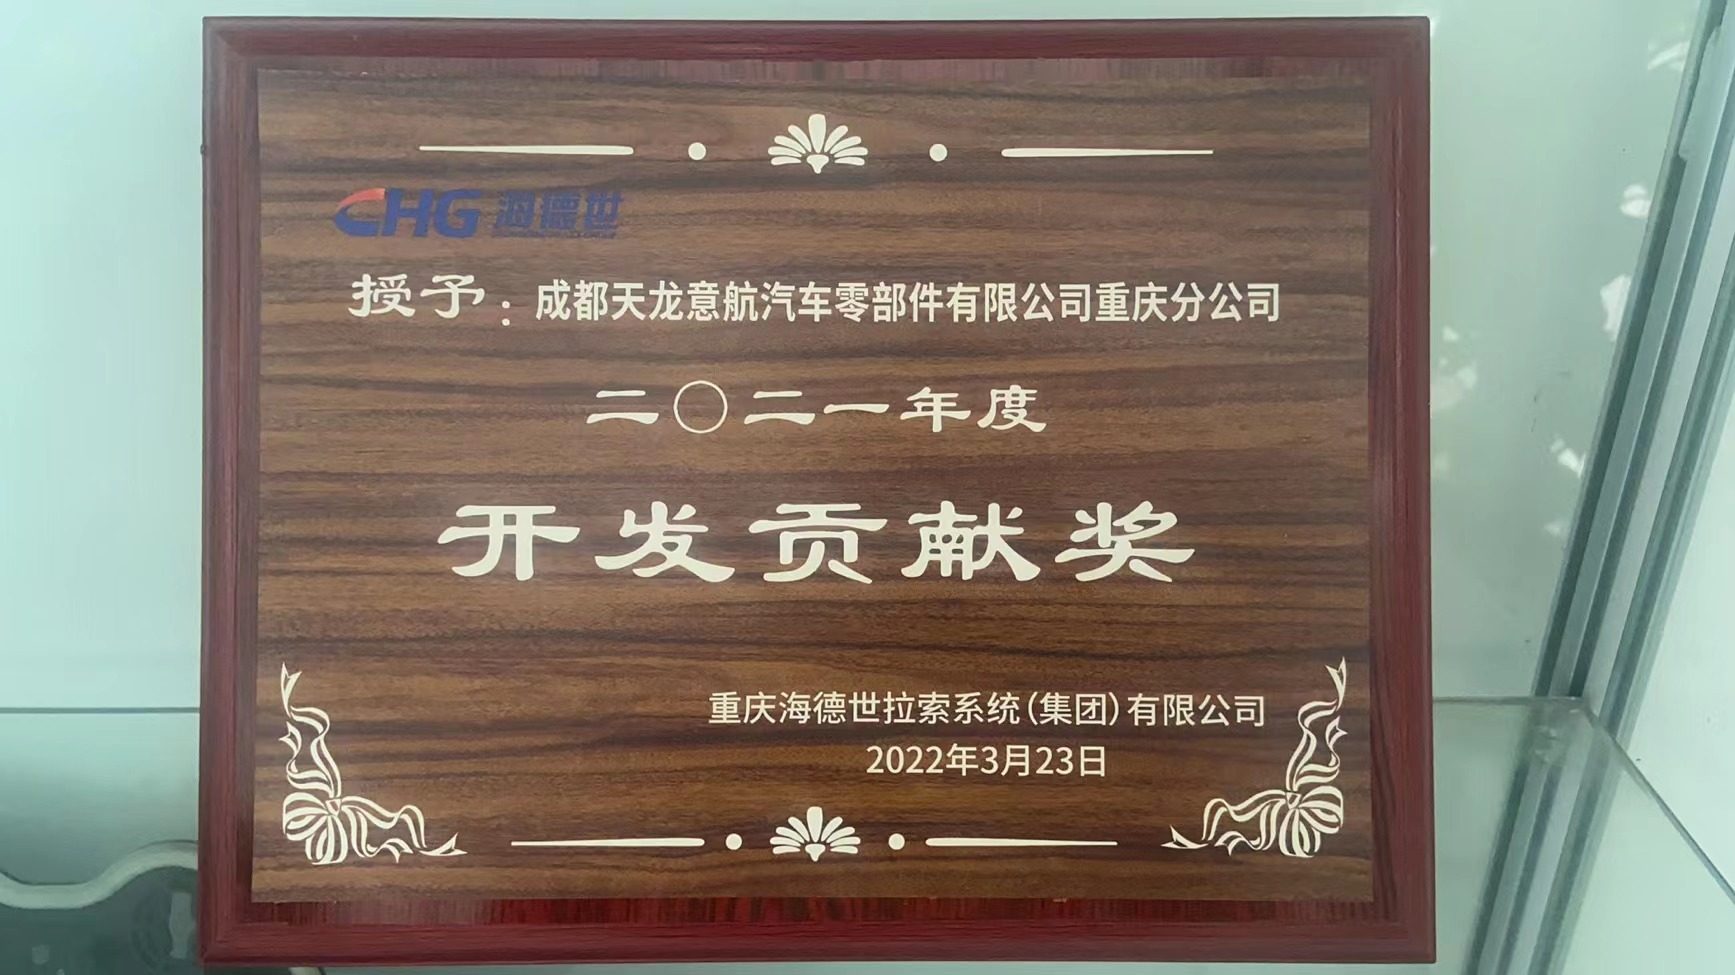 重庆精东视app下载安装旧版本荣获海德世拉索2021年度开发贡献奖